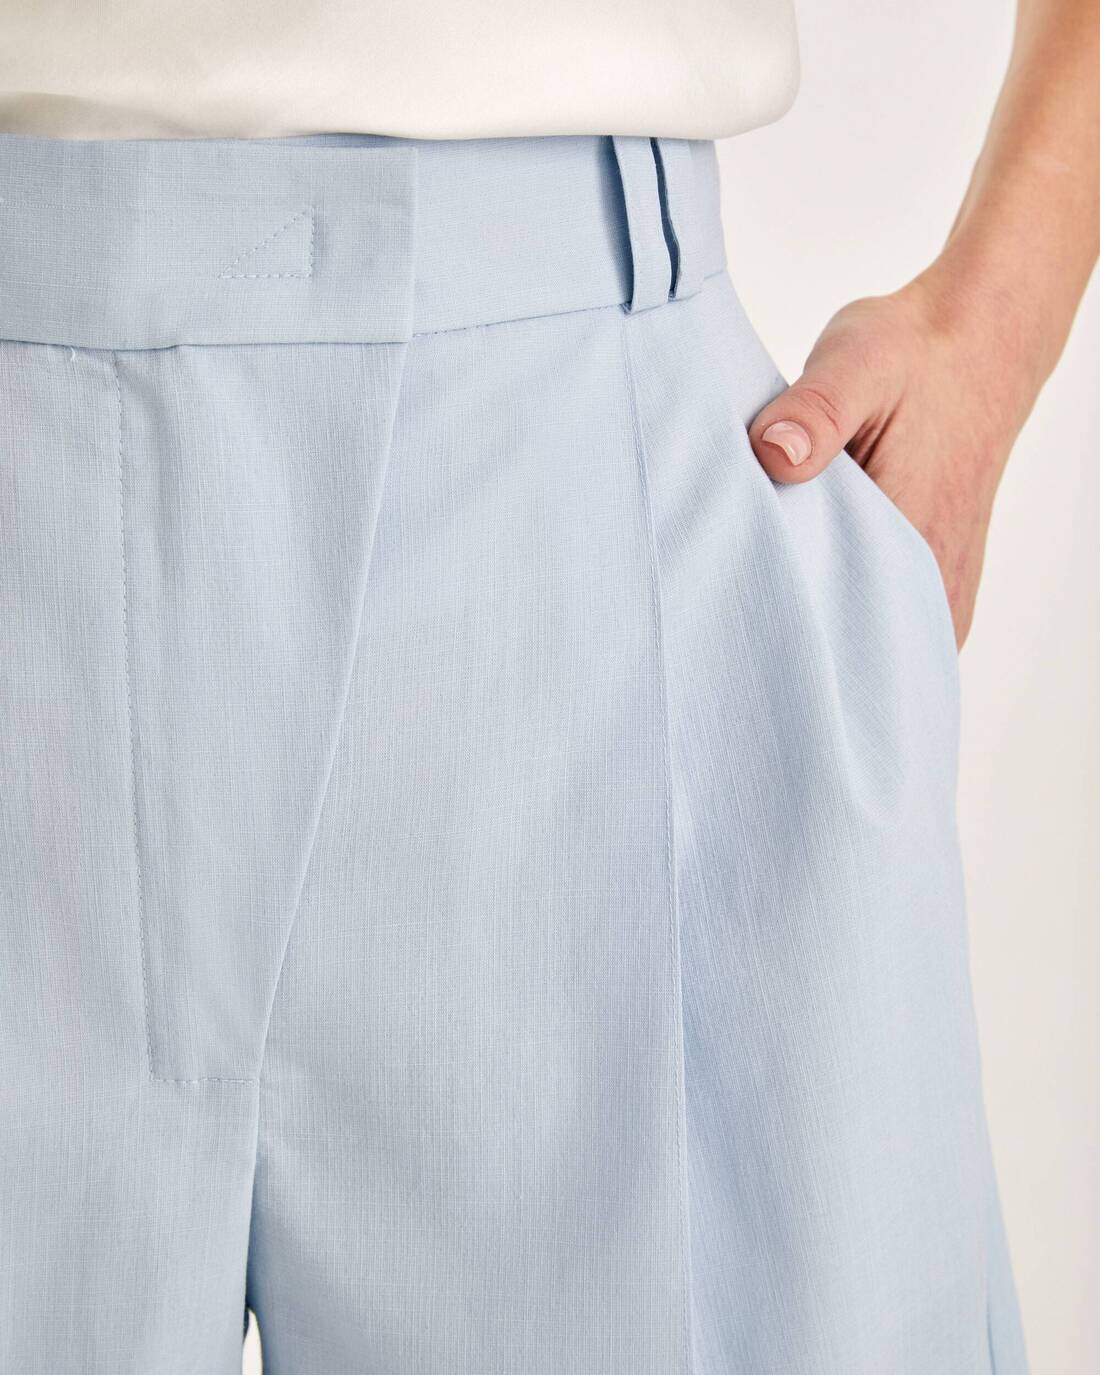 Bermuda shorts with pintucks